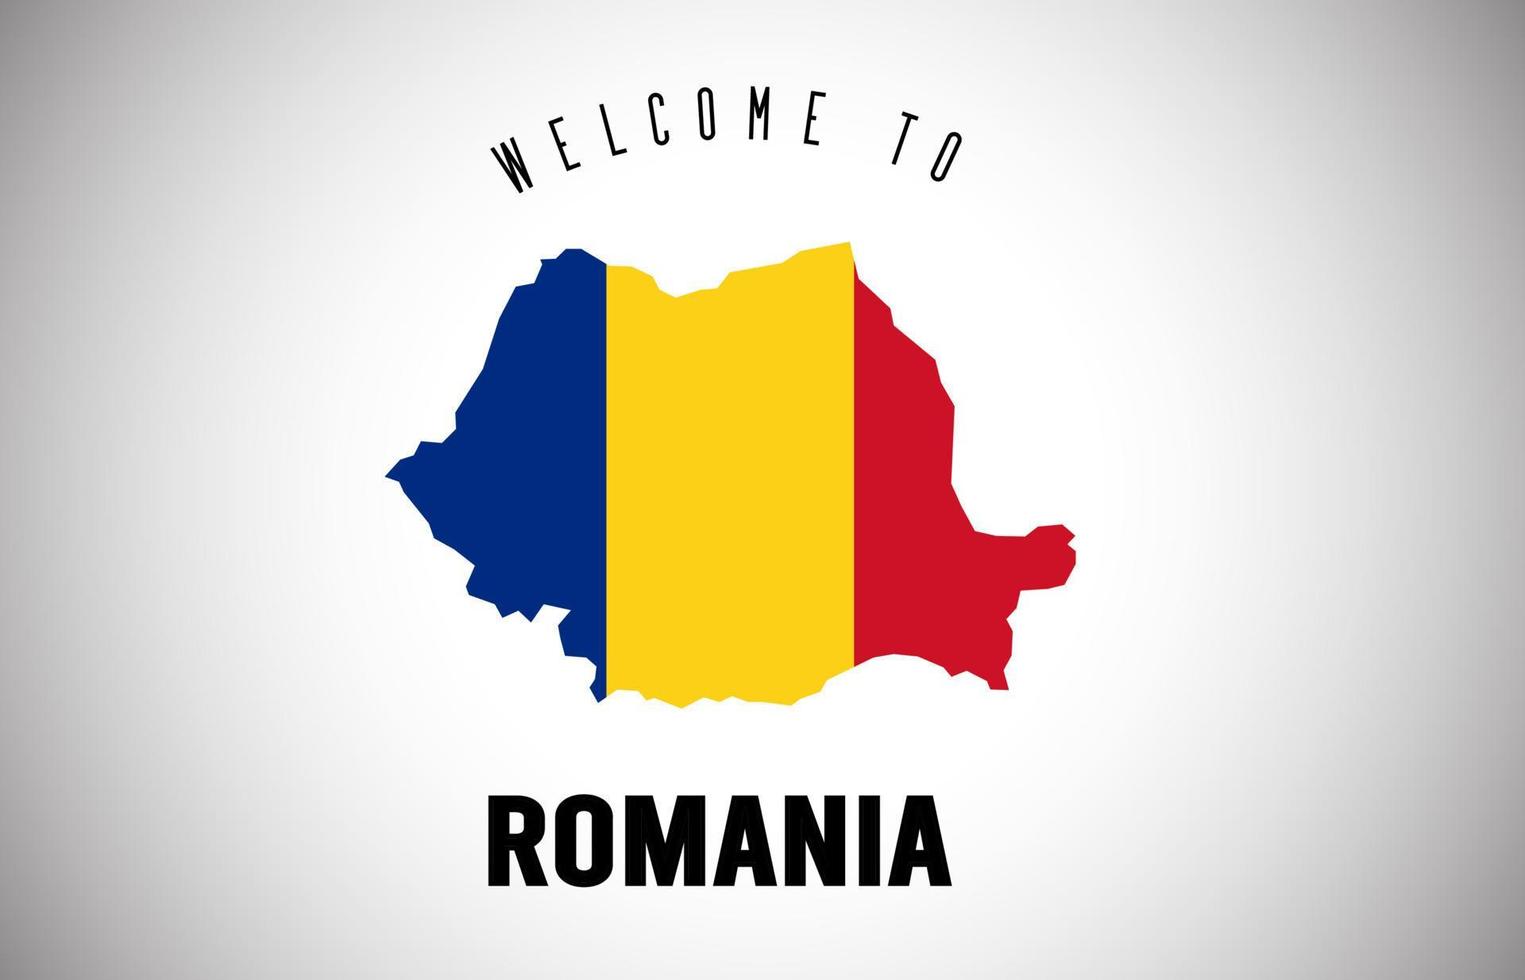 Romania benvenuto al testo e alla bandiera del paese all'interno del disegno vettoriale della mappa del confine del paese.